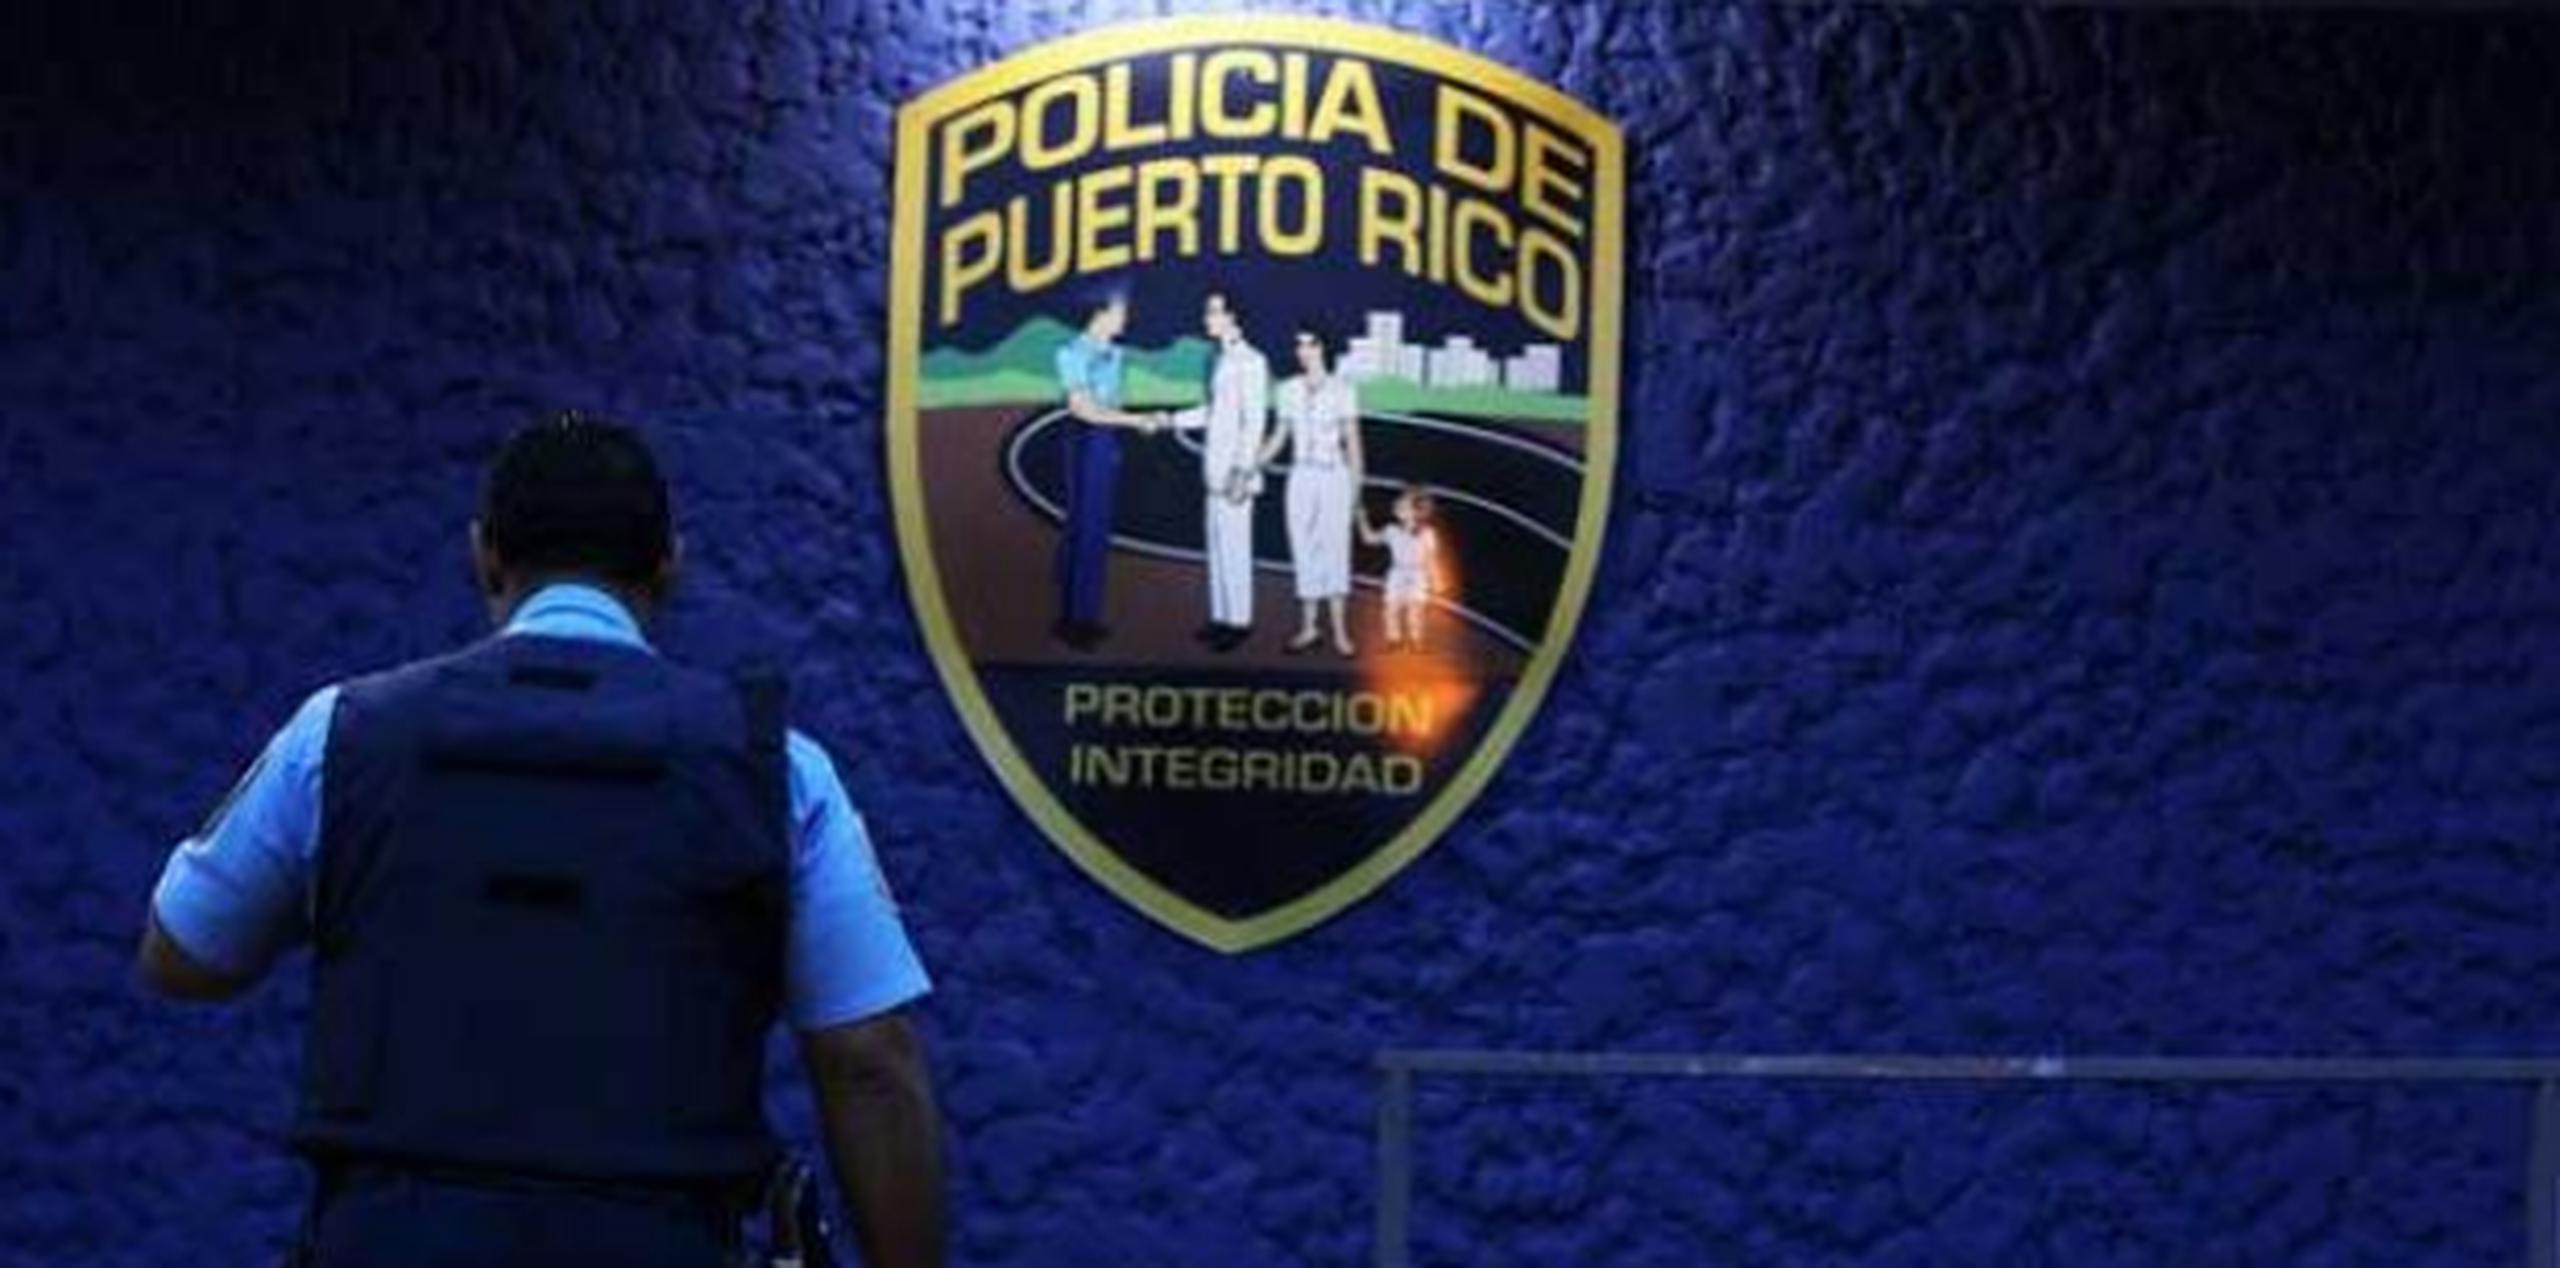 El sospechoso detenido en la Comandancia de Caguas posee expediente criminal por violación a la Ley de Sustancias Controladas, agregó el capitán. (Archivo)